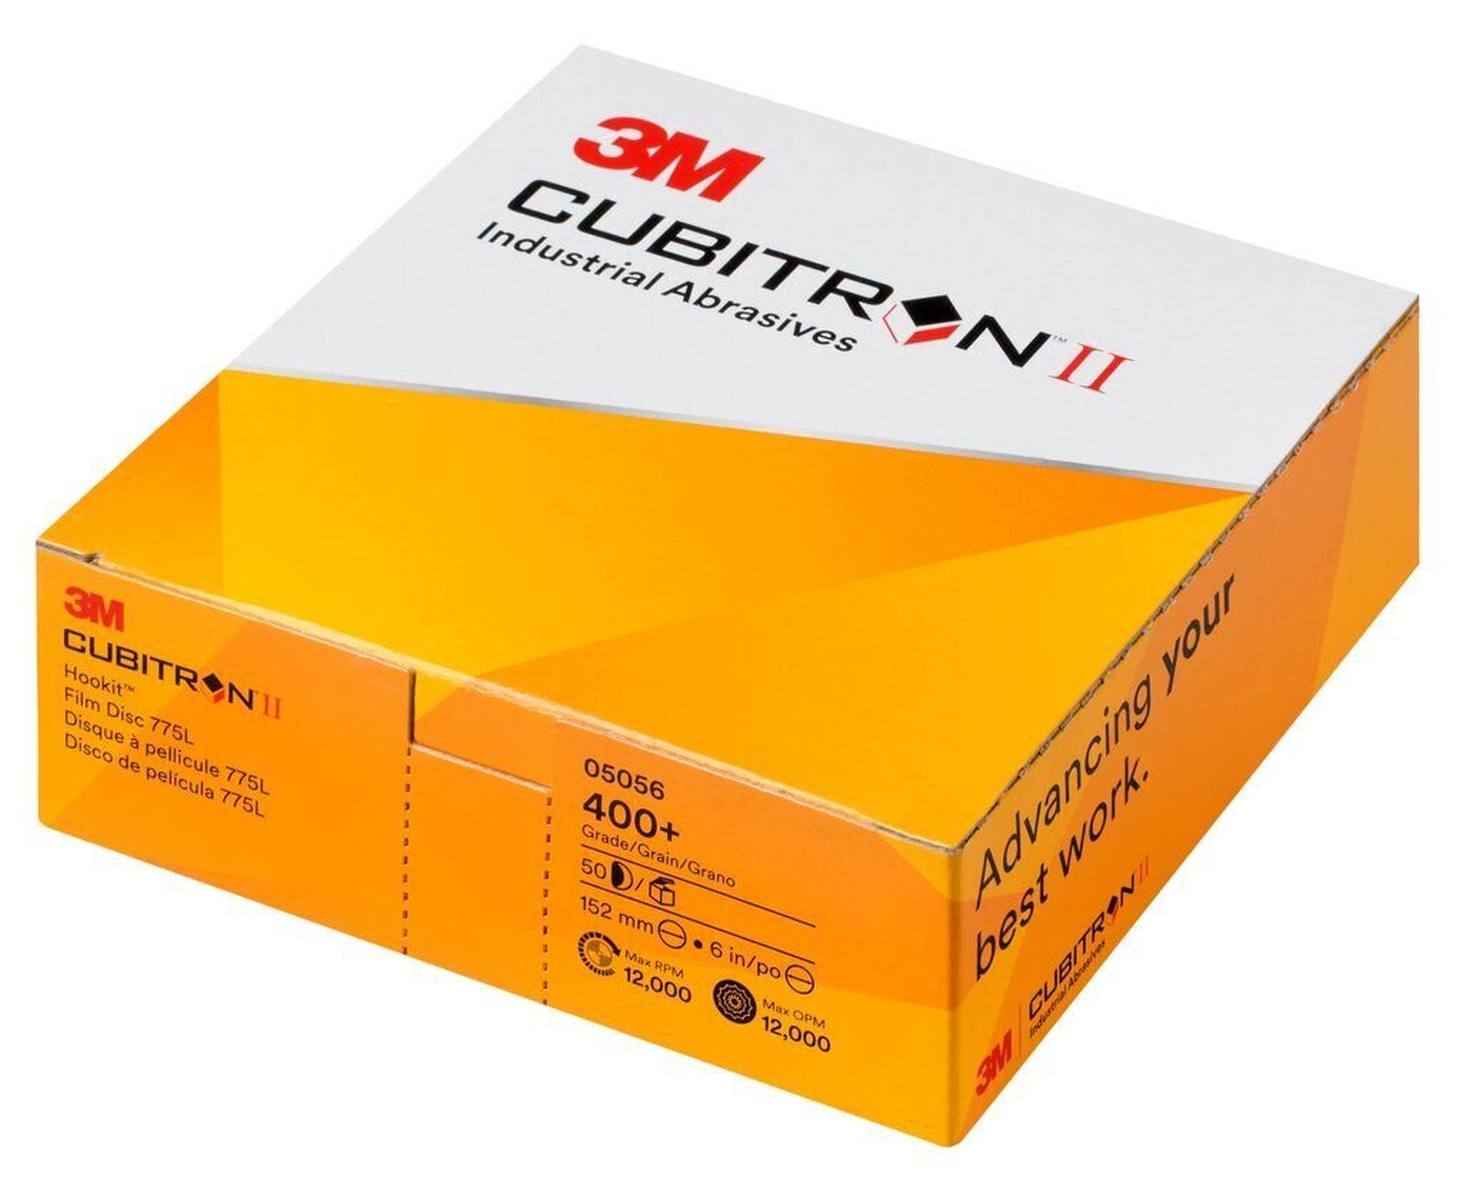 3M Cubitron II Hookit film disc 775L, 150 mm, 400 , multiforo #05059